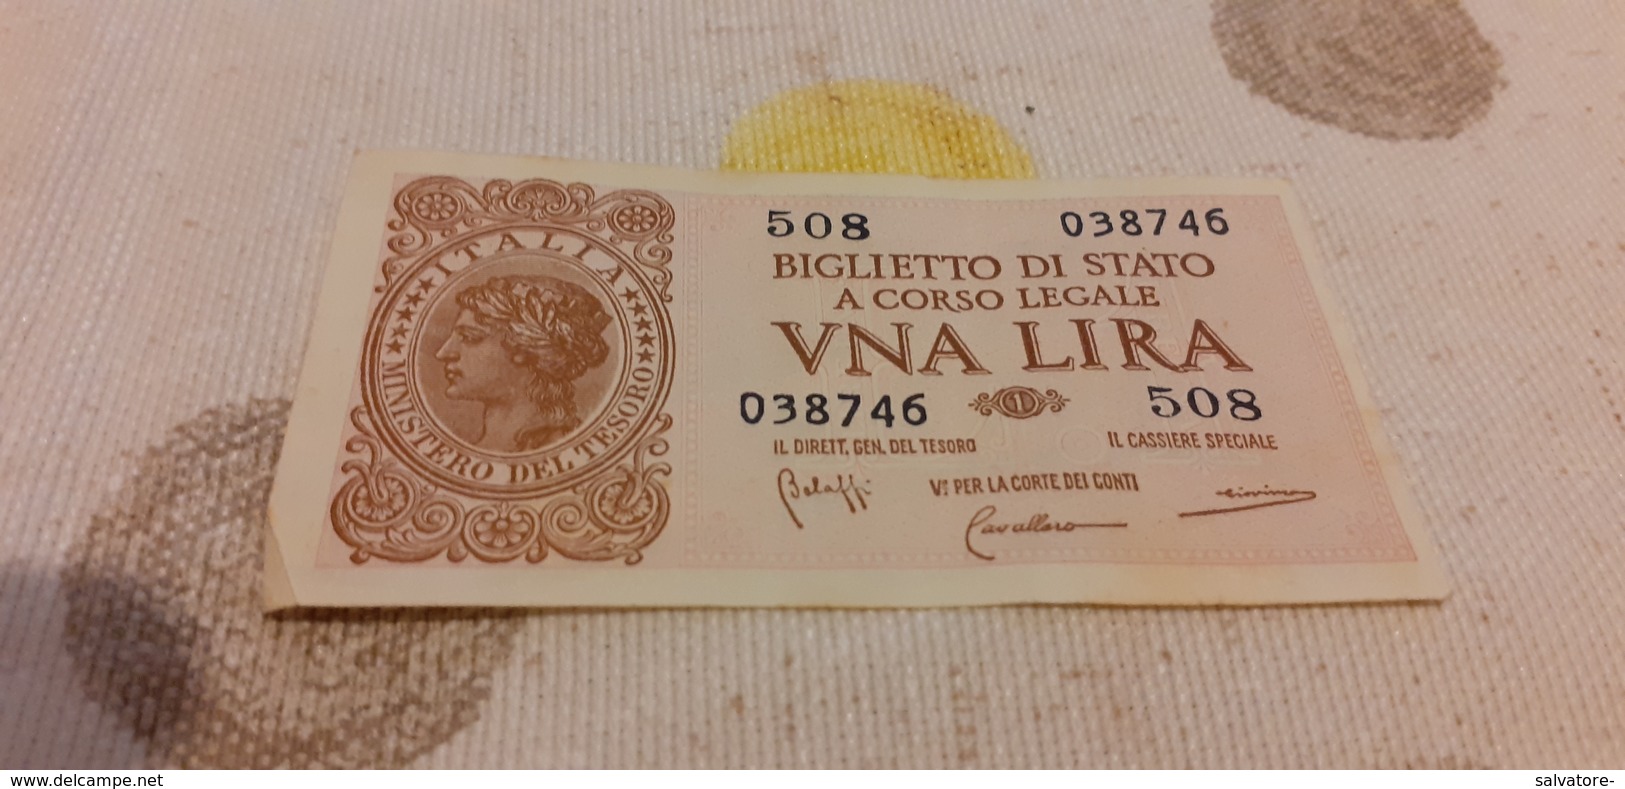 BIGLIETTO DI STATO 1 LIRA 1944 - Biglietti Di Stato